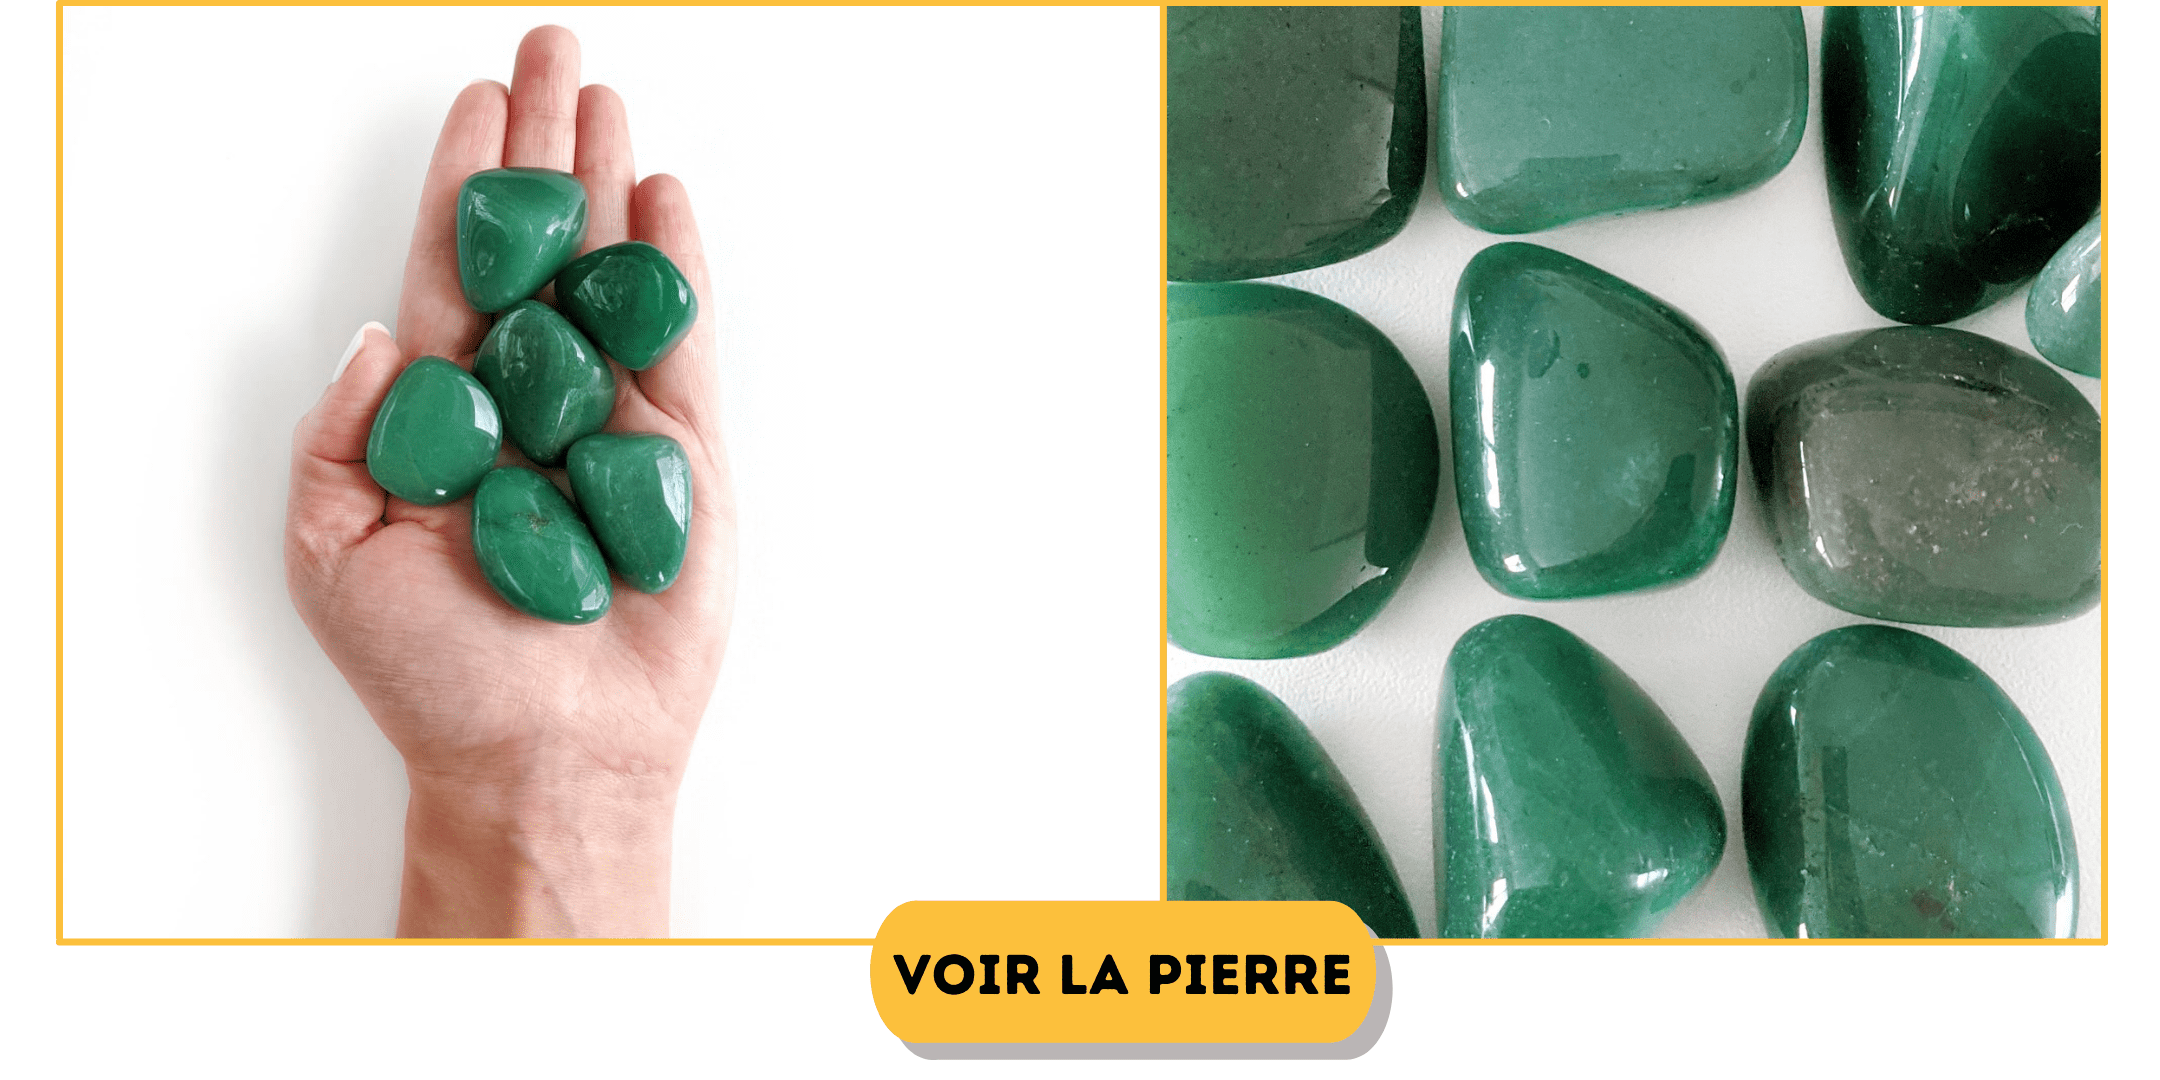 Quelles sont les pierres de couleurs vertes ? 